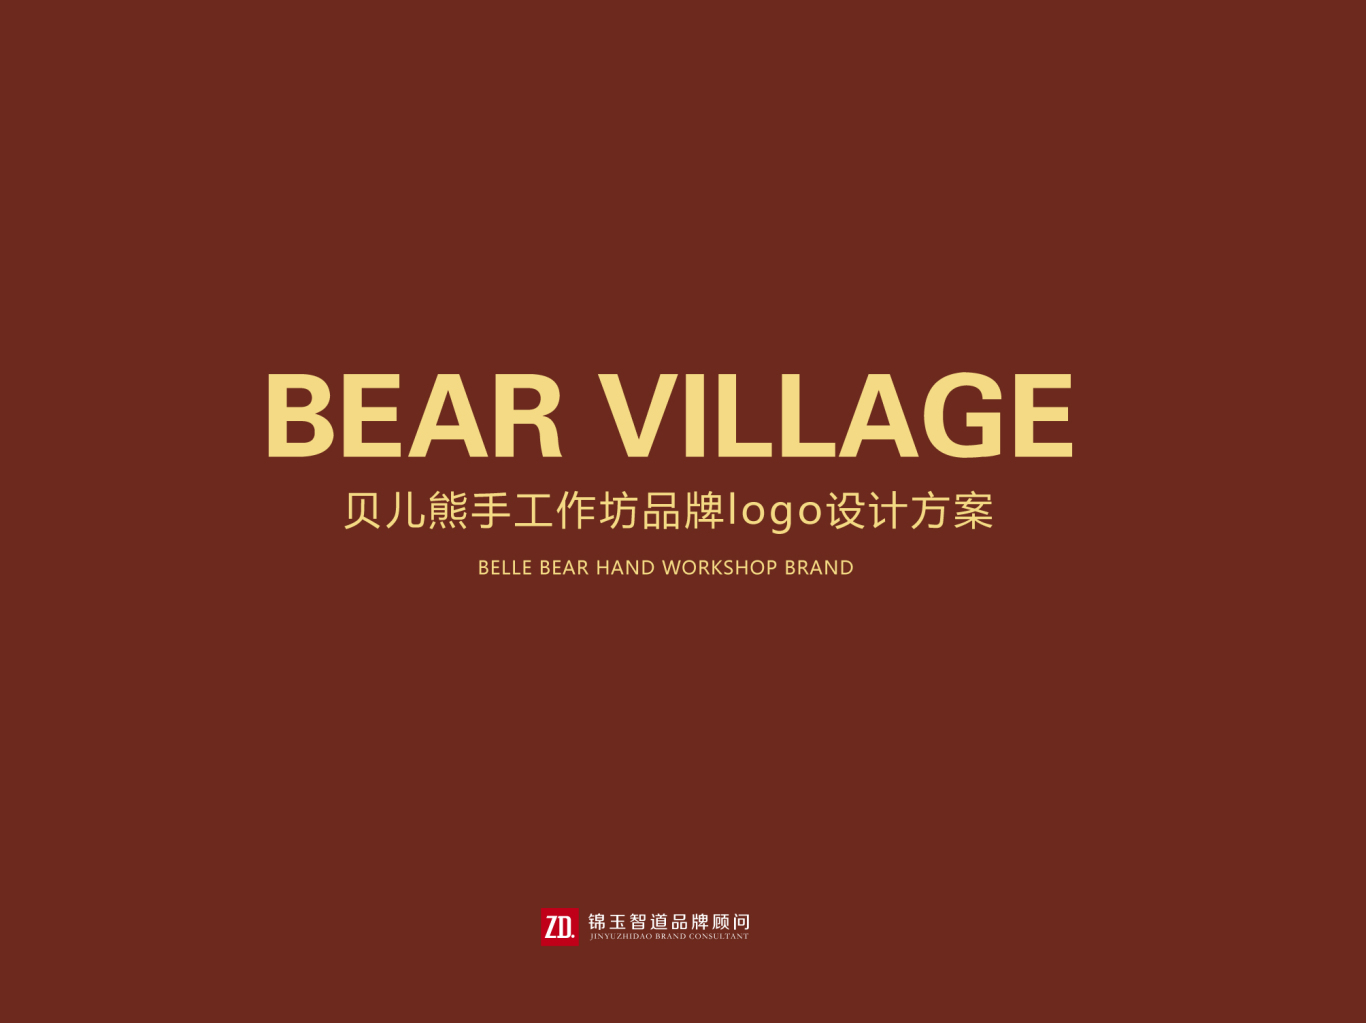 贝尔熊品牌logo设计方案——锦玉智道品牌顾问图0